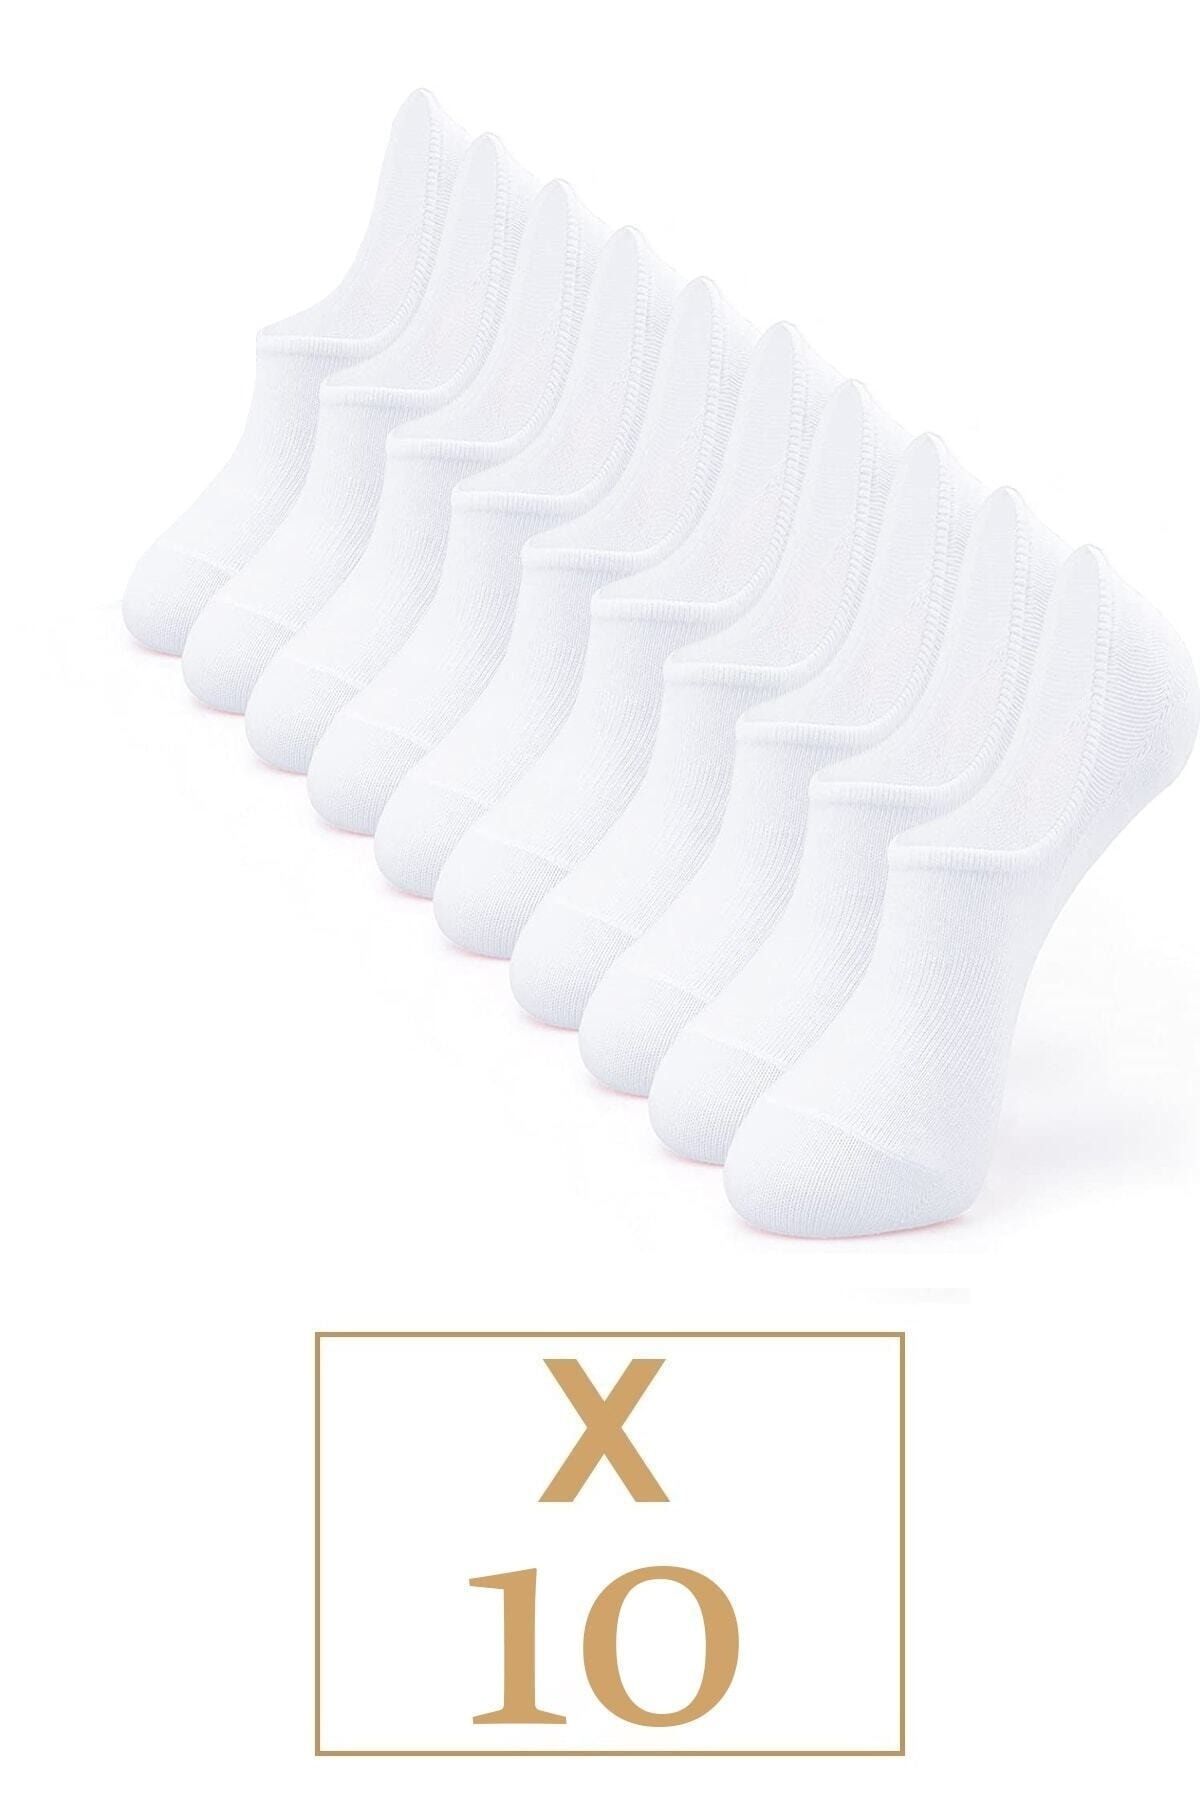 BGK Unisex 10 Çift Pamuklu Görünmez Sneakers Çorap Beyaz (ekonomik)